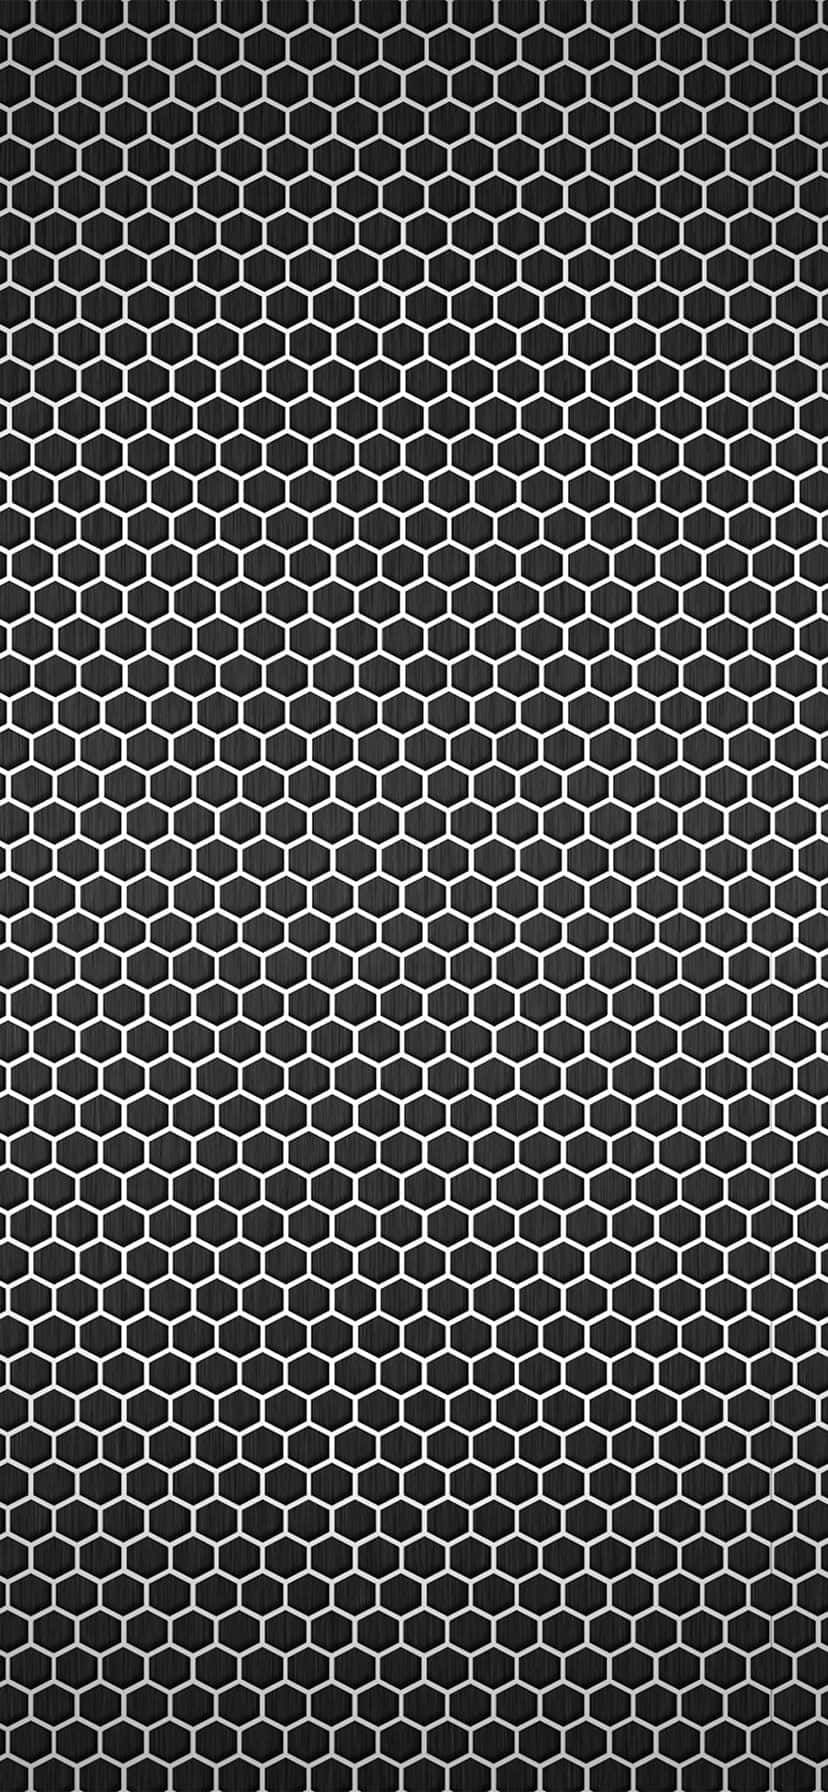 Unpatrón Hexagonal En Blanco Y Negro Sobre Un Fondo Negro Fondo de pantalla